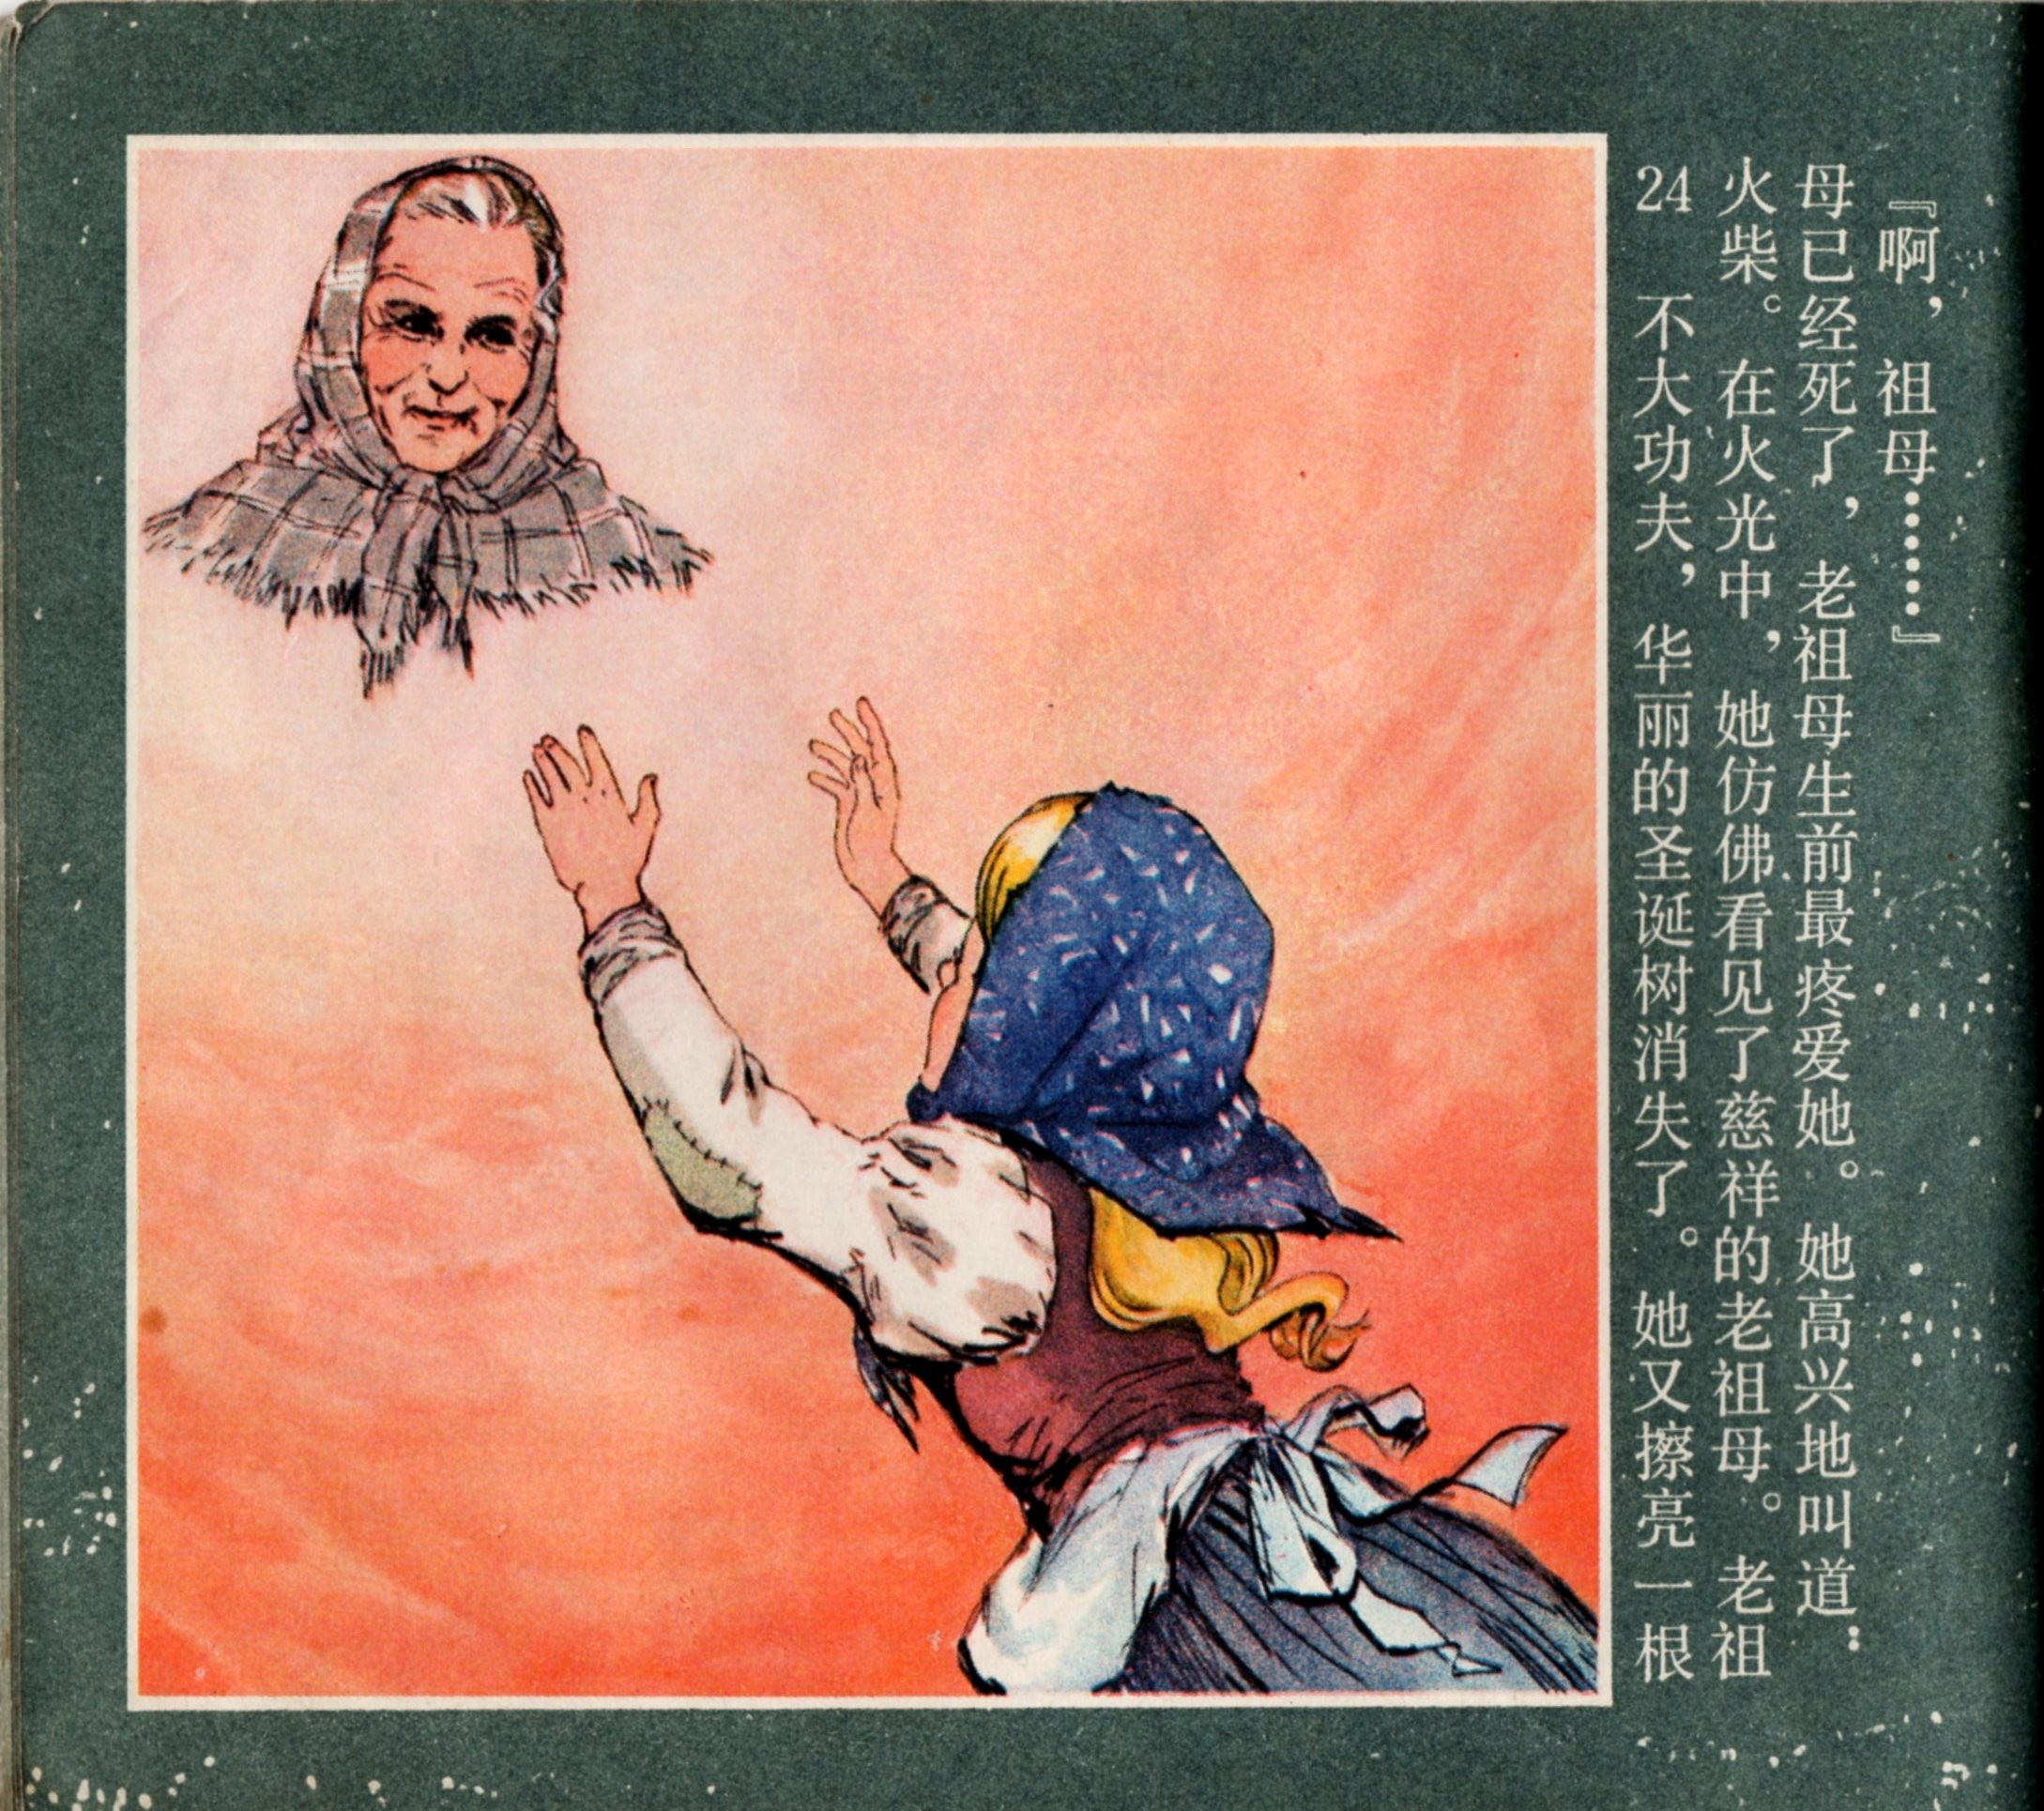 「童年怀旧彩色连环画」卖火柴的小女孩(1978年)